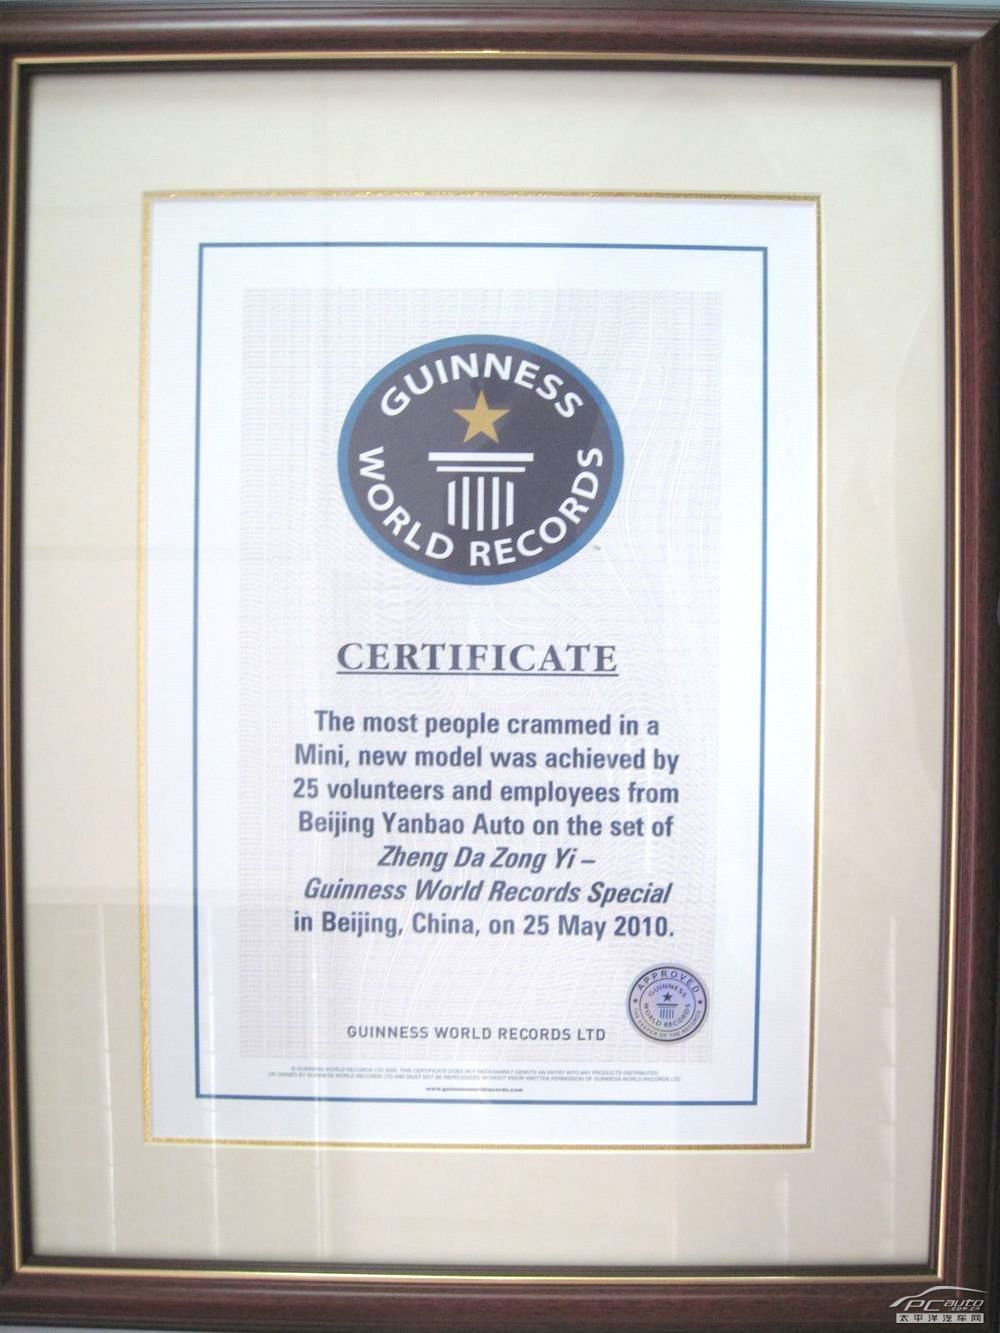 北京燕宝汽车所获得的吉尼斯世界纪录证书